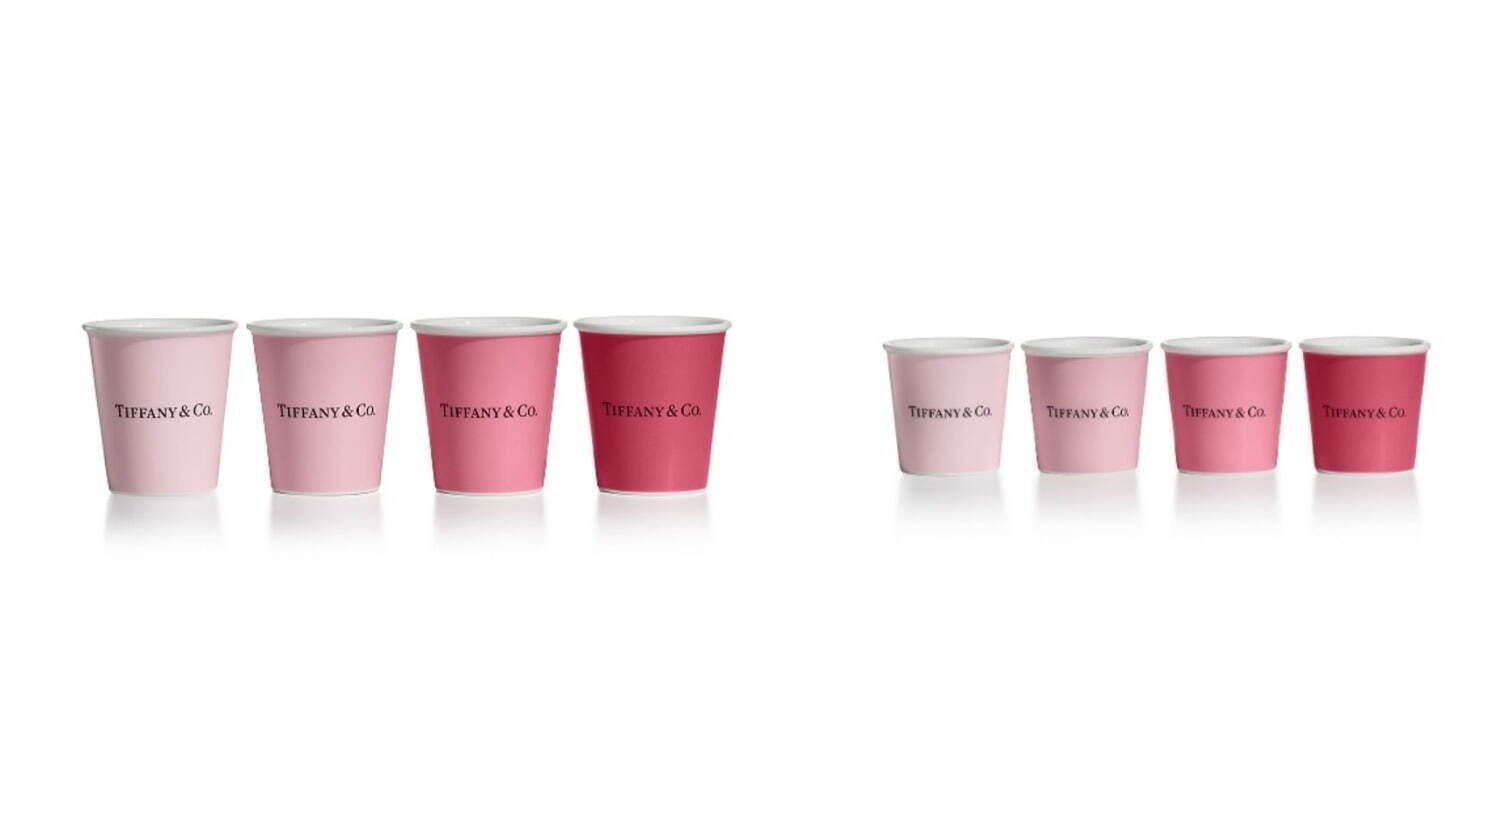 (左から)ティファニー コーヒー カップ ピンク(4個セット) 51,700円、ティファニー エスプレッソ カップ ピンク(4個セット) 30,250円